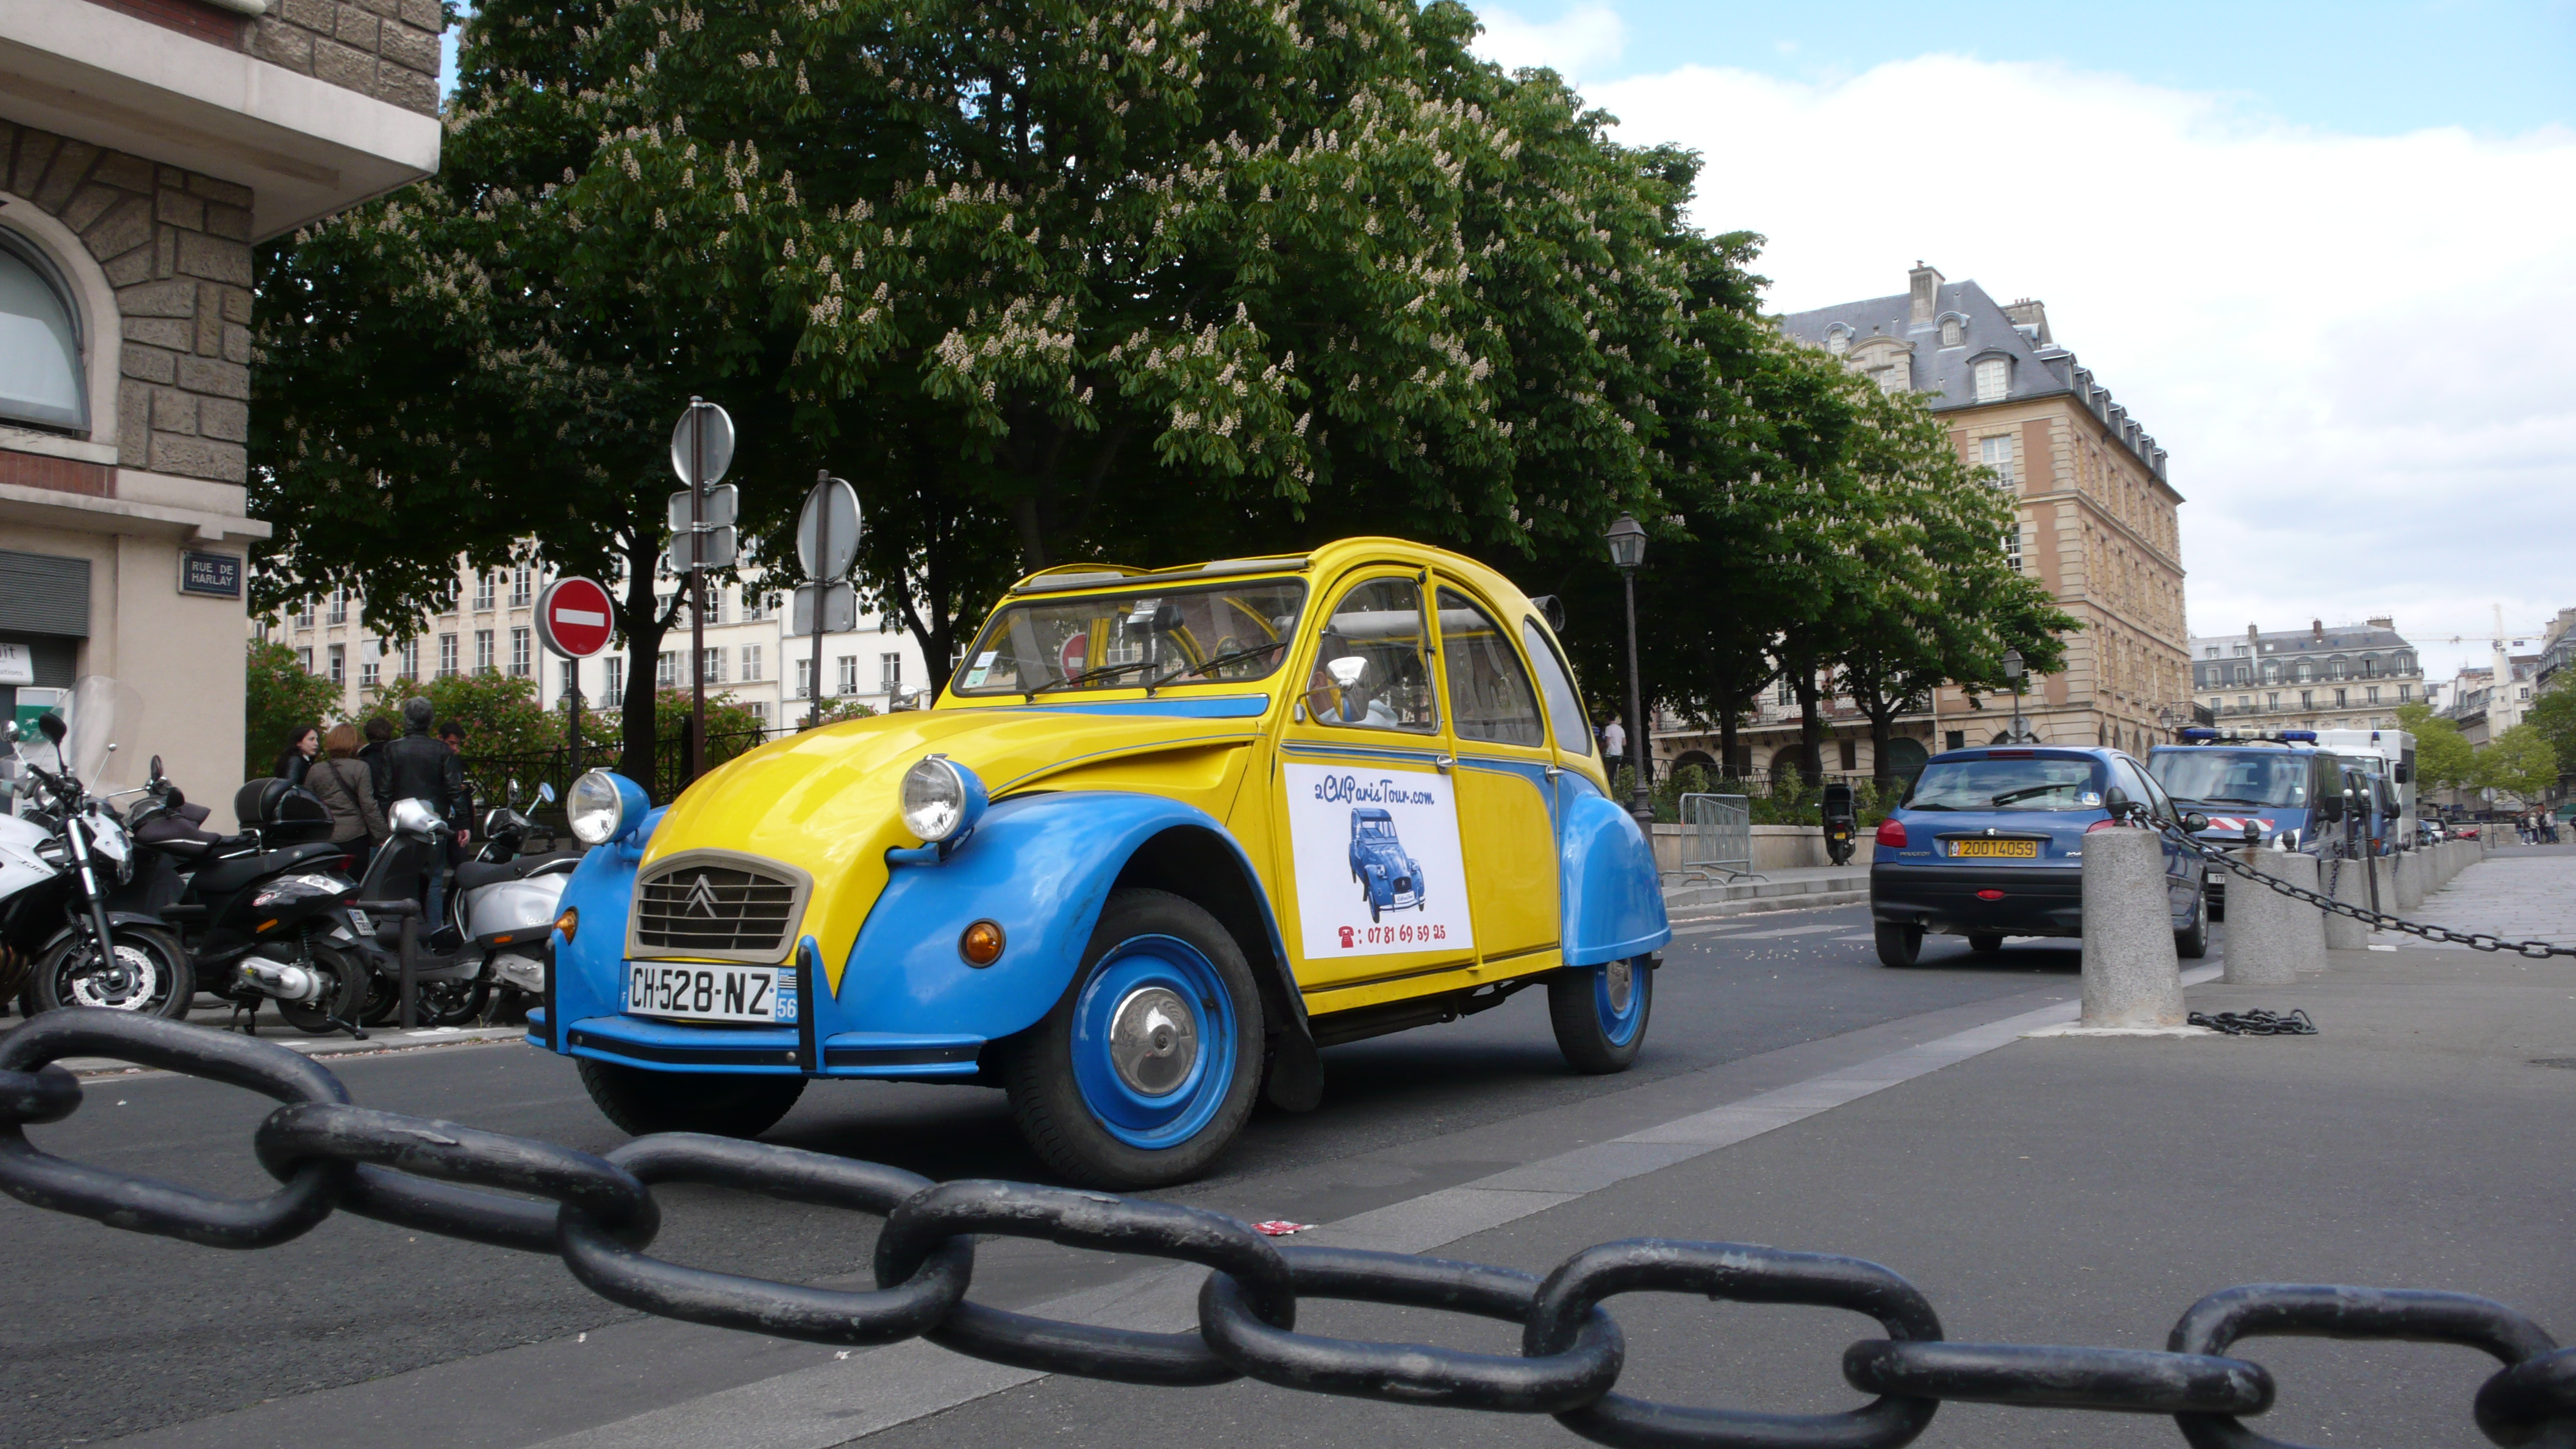 2CV Paris Tour - Visit Paris by 2CV! Between Rive Gauche and Rive Droite